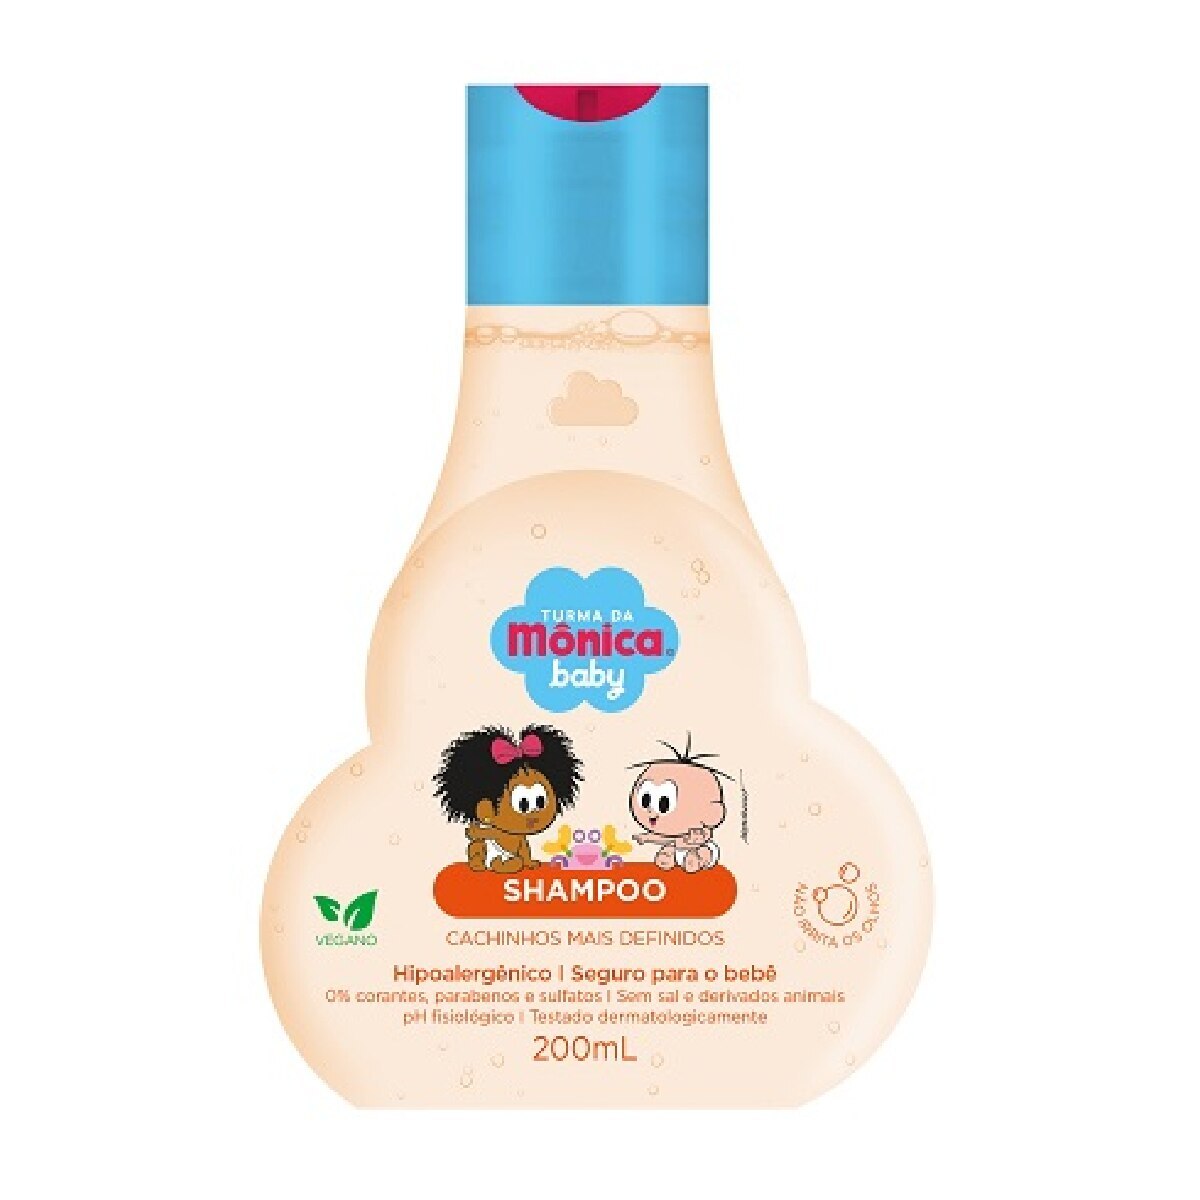 Shampoo Turma da Monica Baby Cachinhos Mais Definidos 200ml